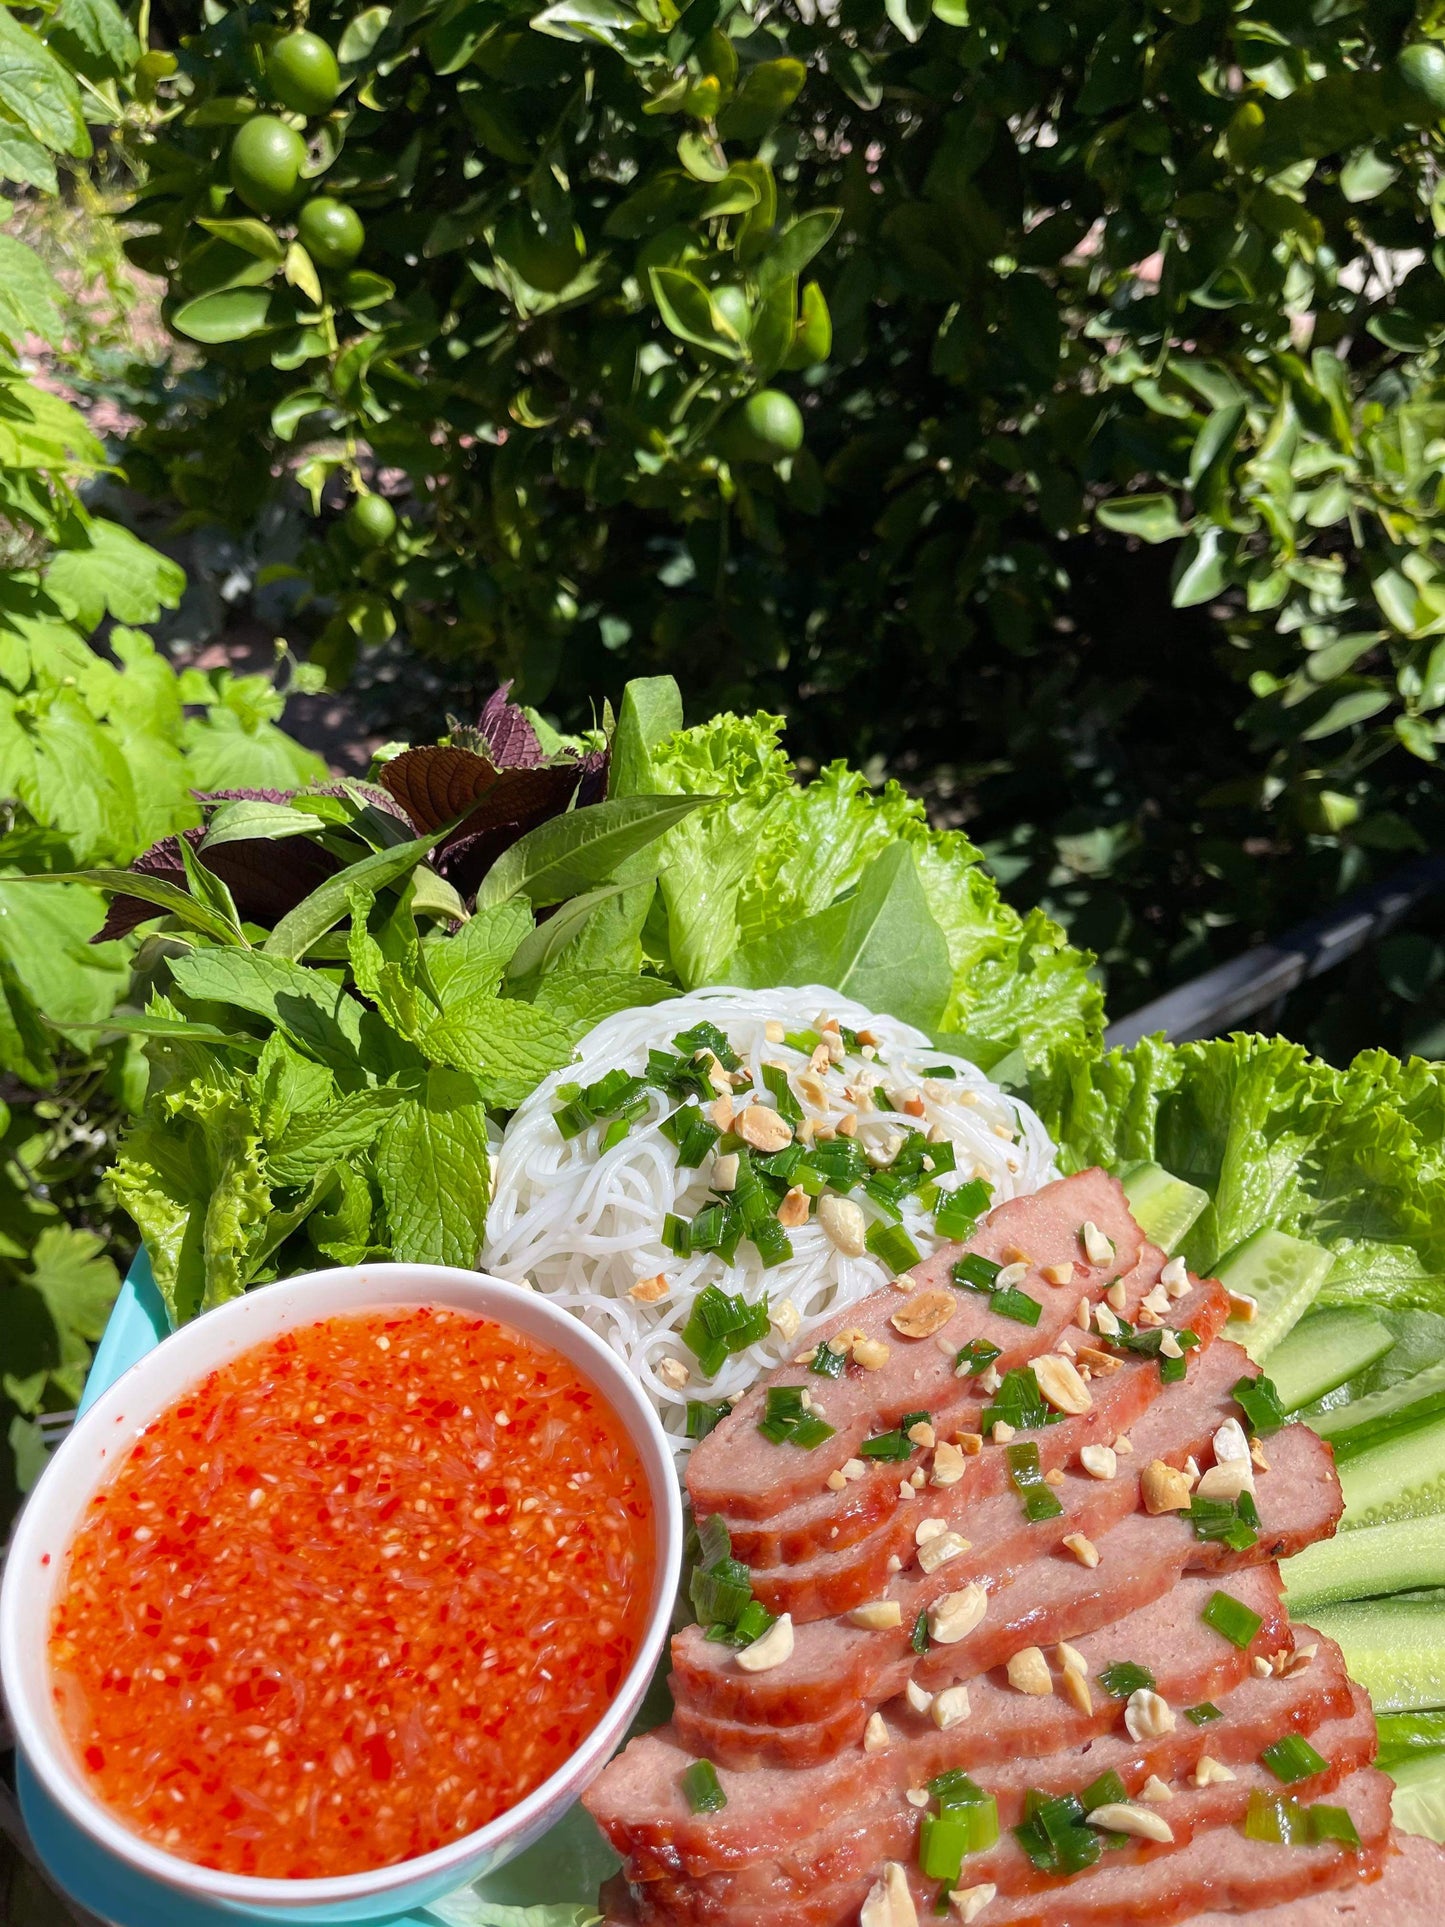 Nem nướng Tiêu Hột- Nem Nuong Pepper NO MSG- 14 oz